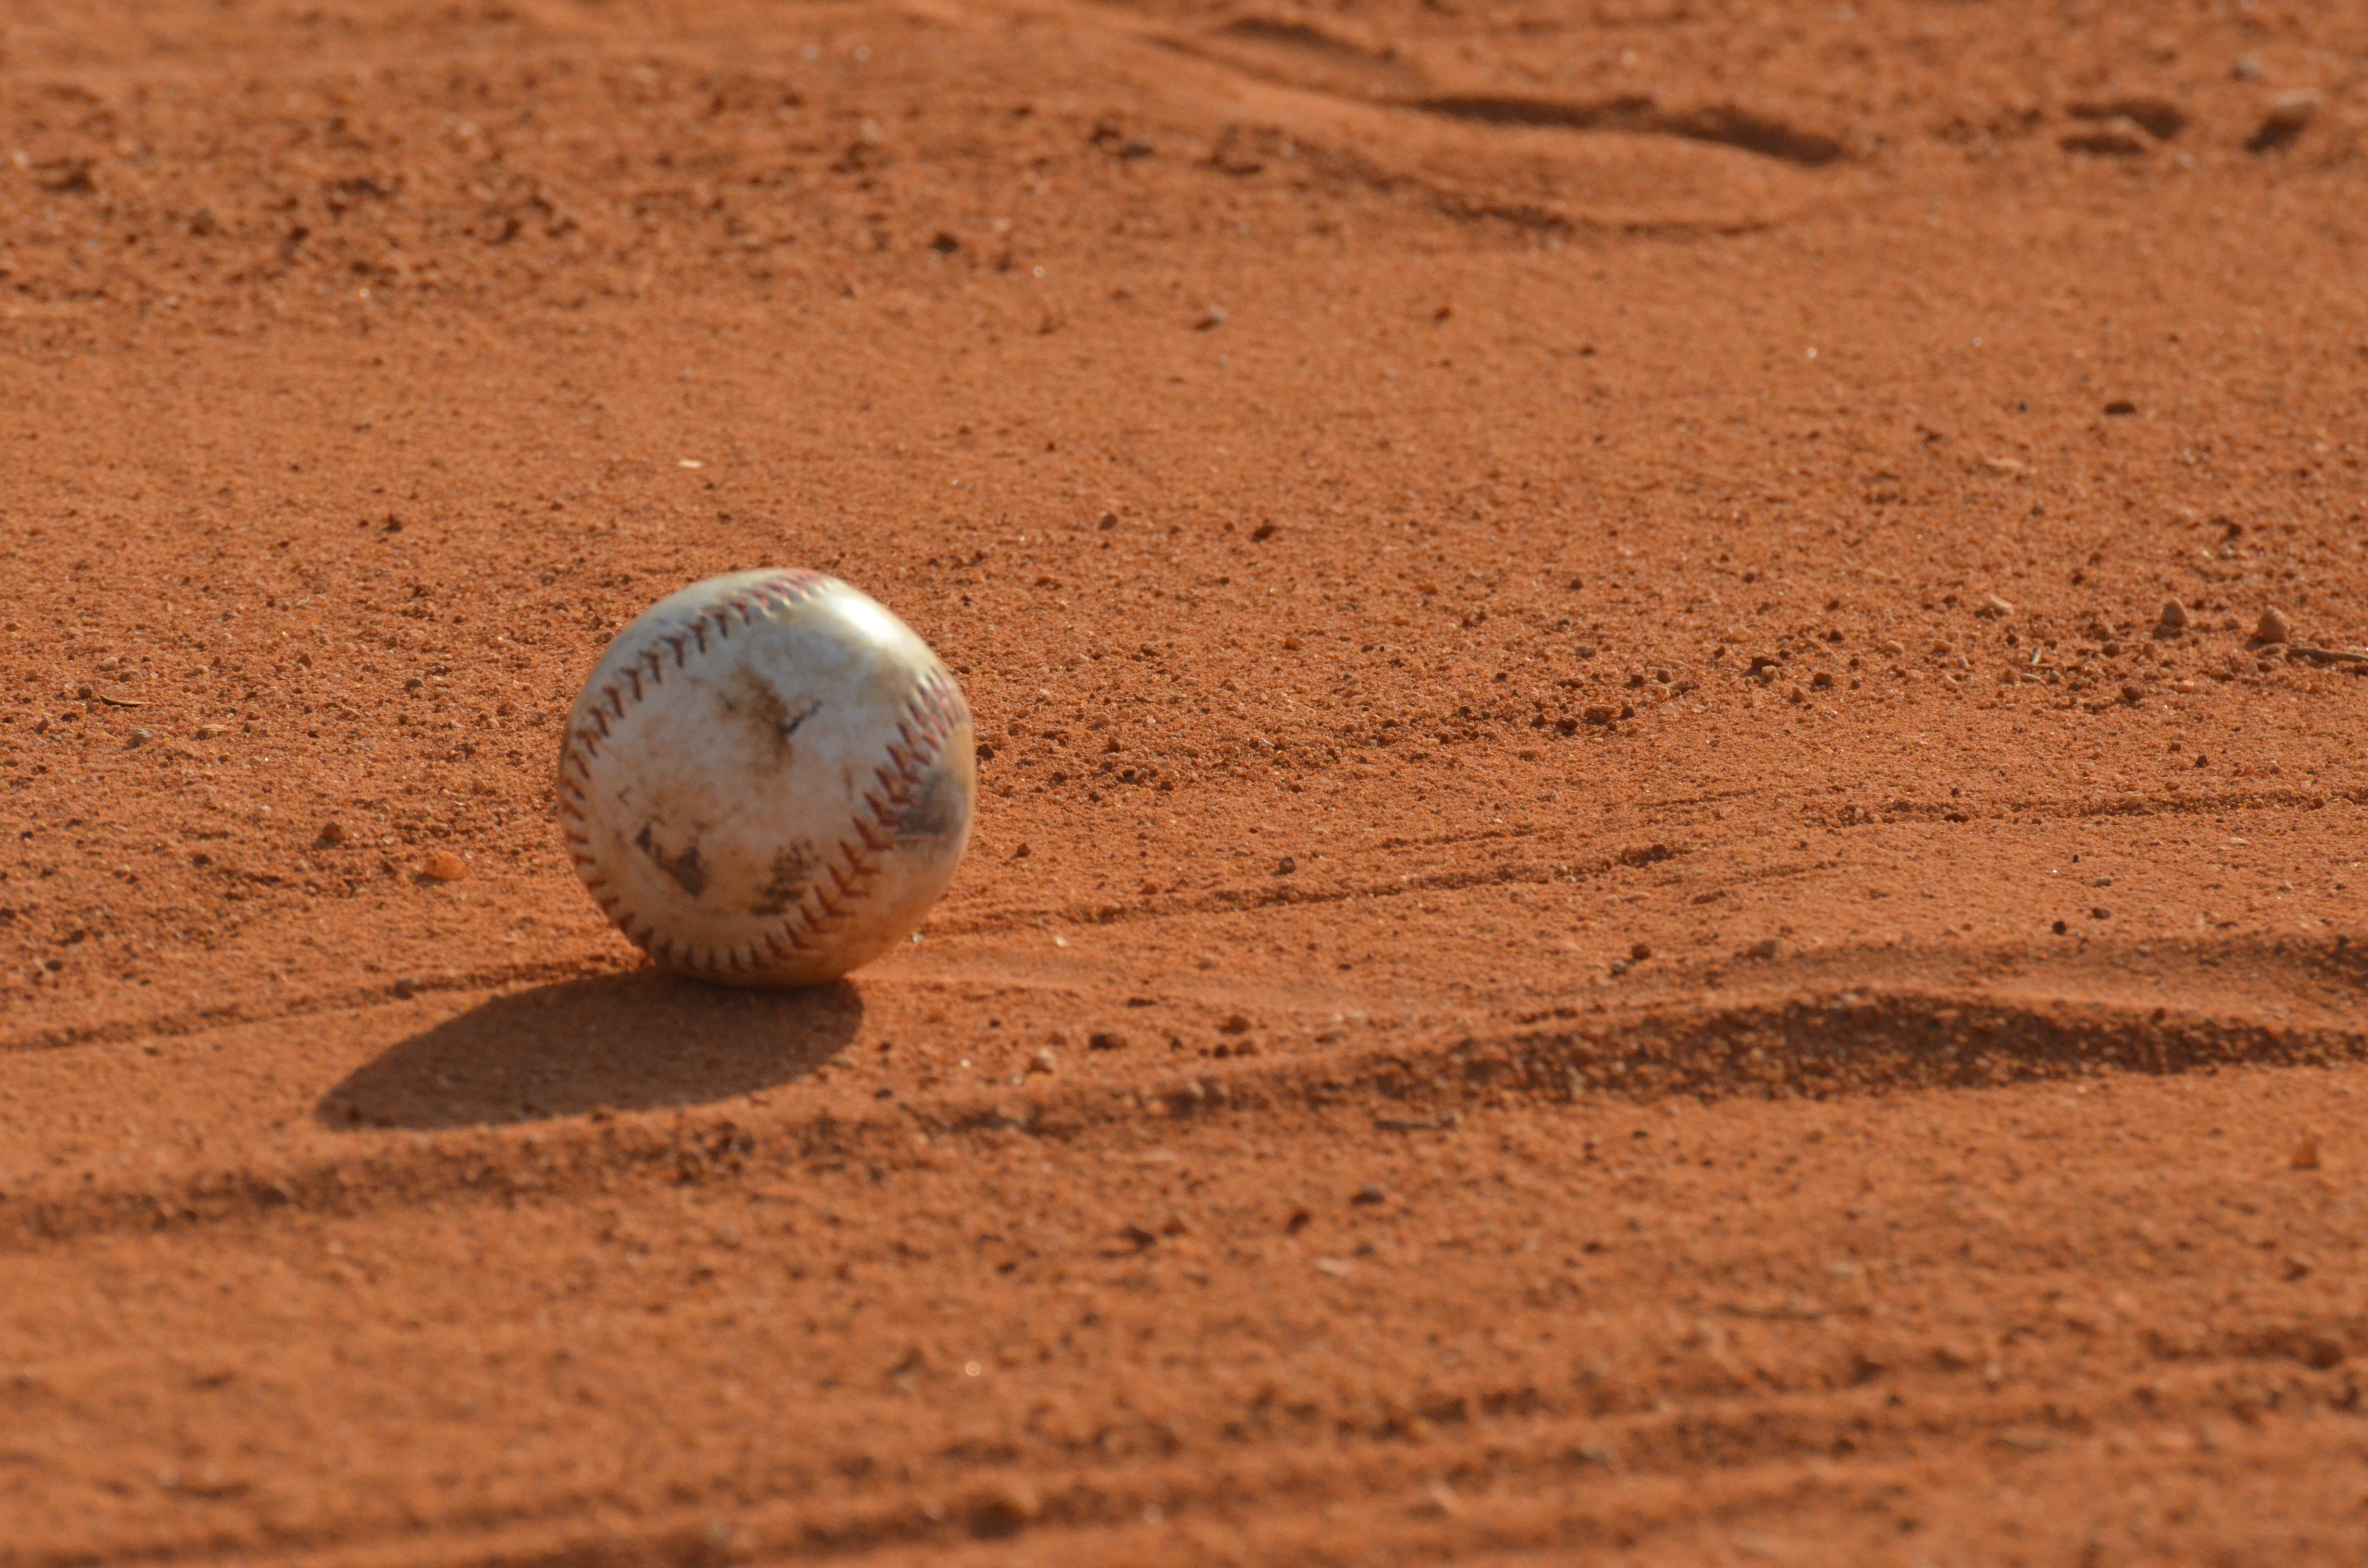 Na imagem, a foto em plano fechado, mostra uma bolinha de beisebol sobre a areia